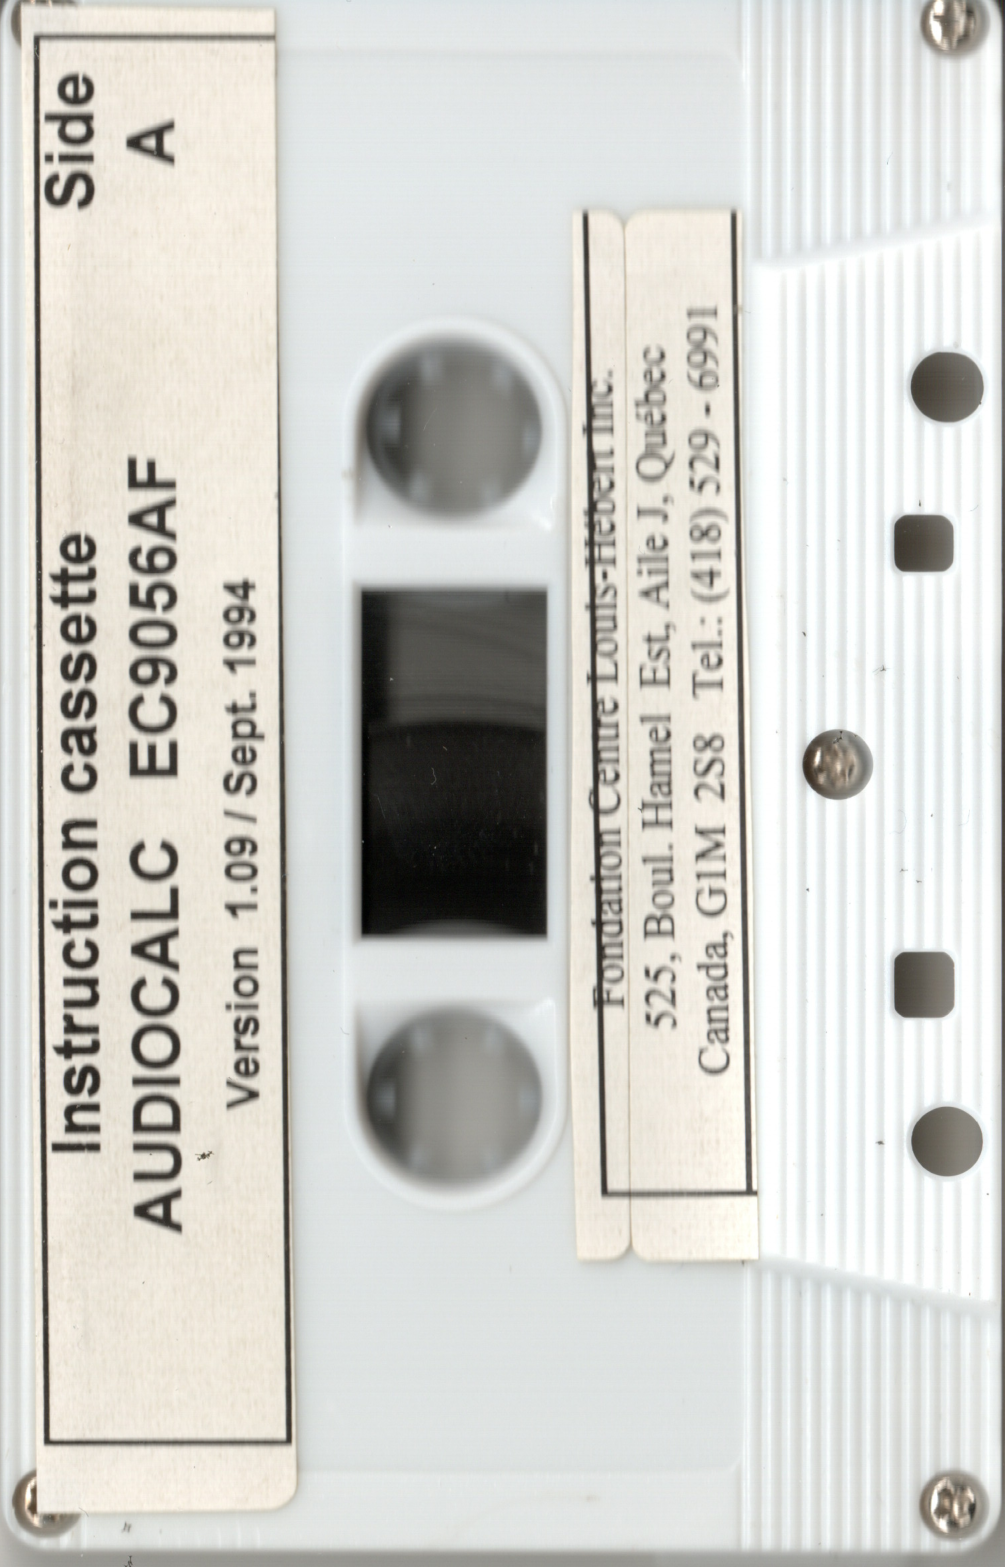 https://archive.org/details/audiocalc-ec-9056-af-instruction-cassette-version-1.09-september-1994-side-a-duplicated-channel